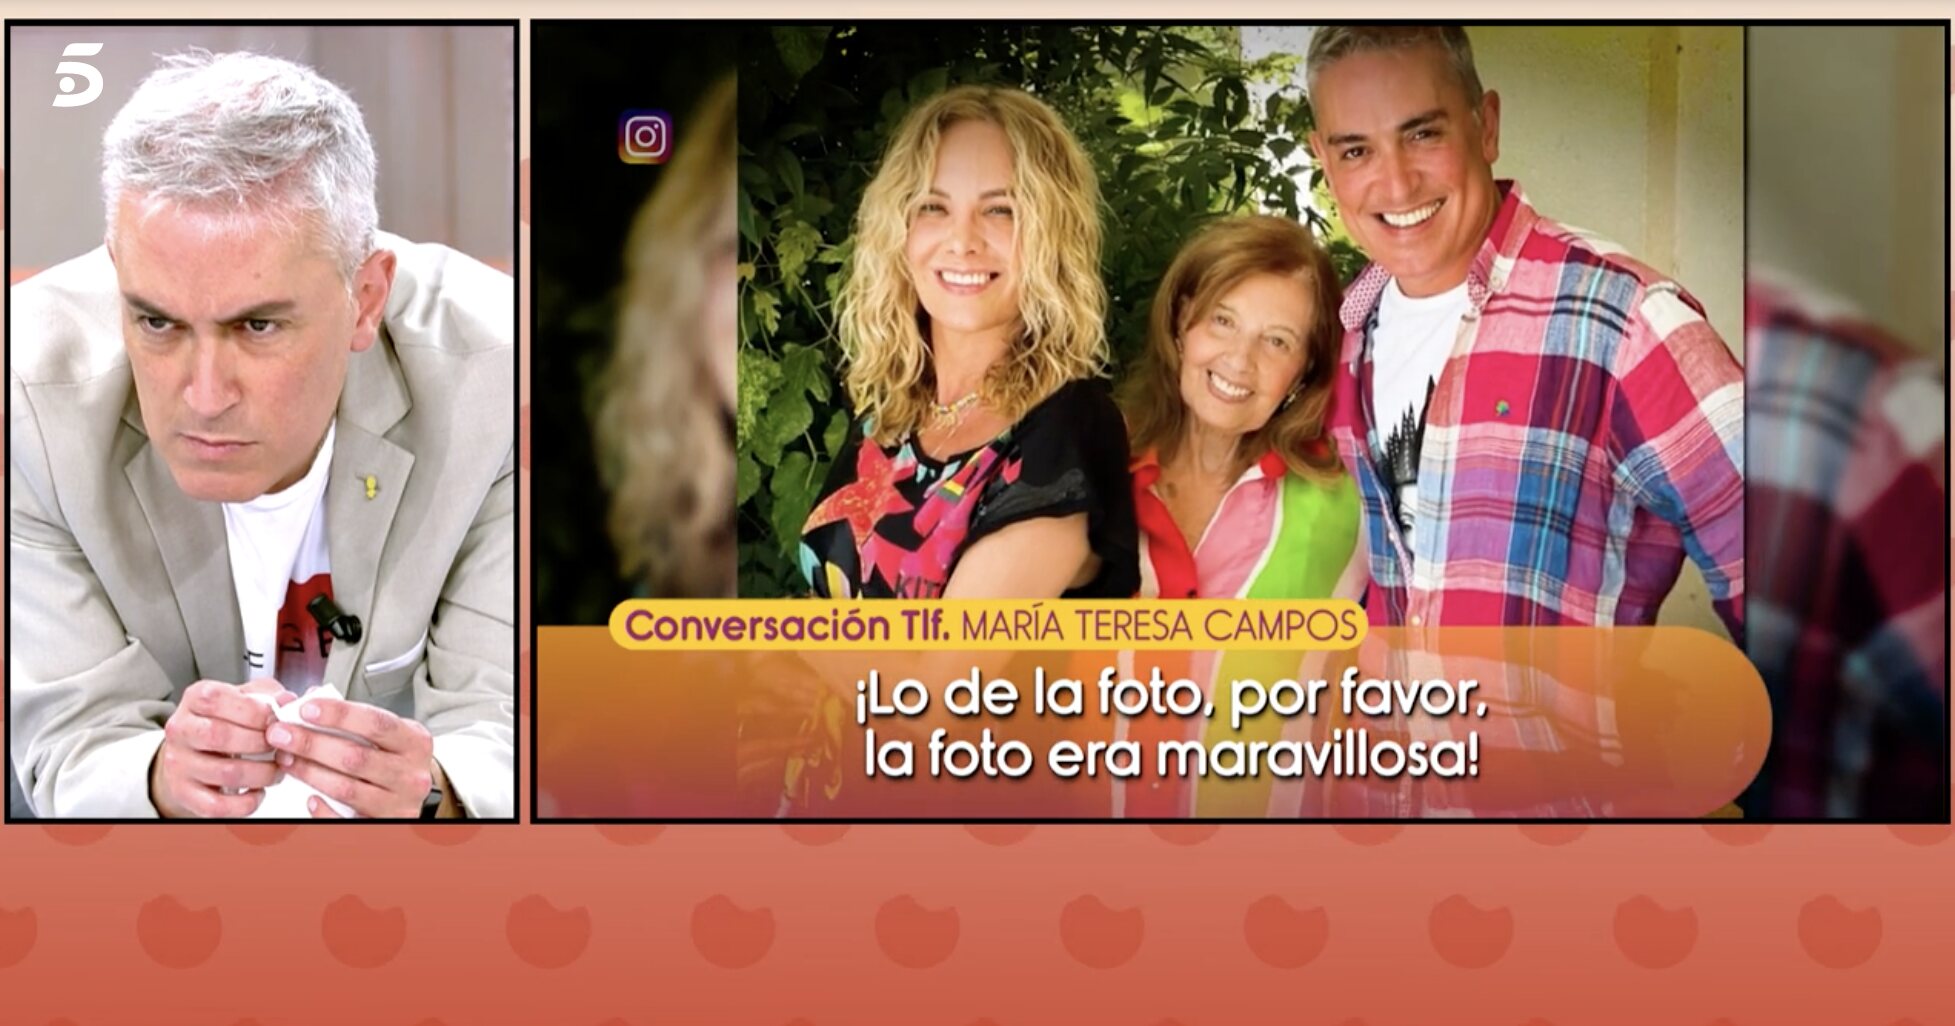 María Teresa Campos no cree que Kiko Hernández haya dicho algo ofensivo de su familia | Foto: Telecinco.es